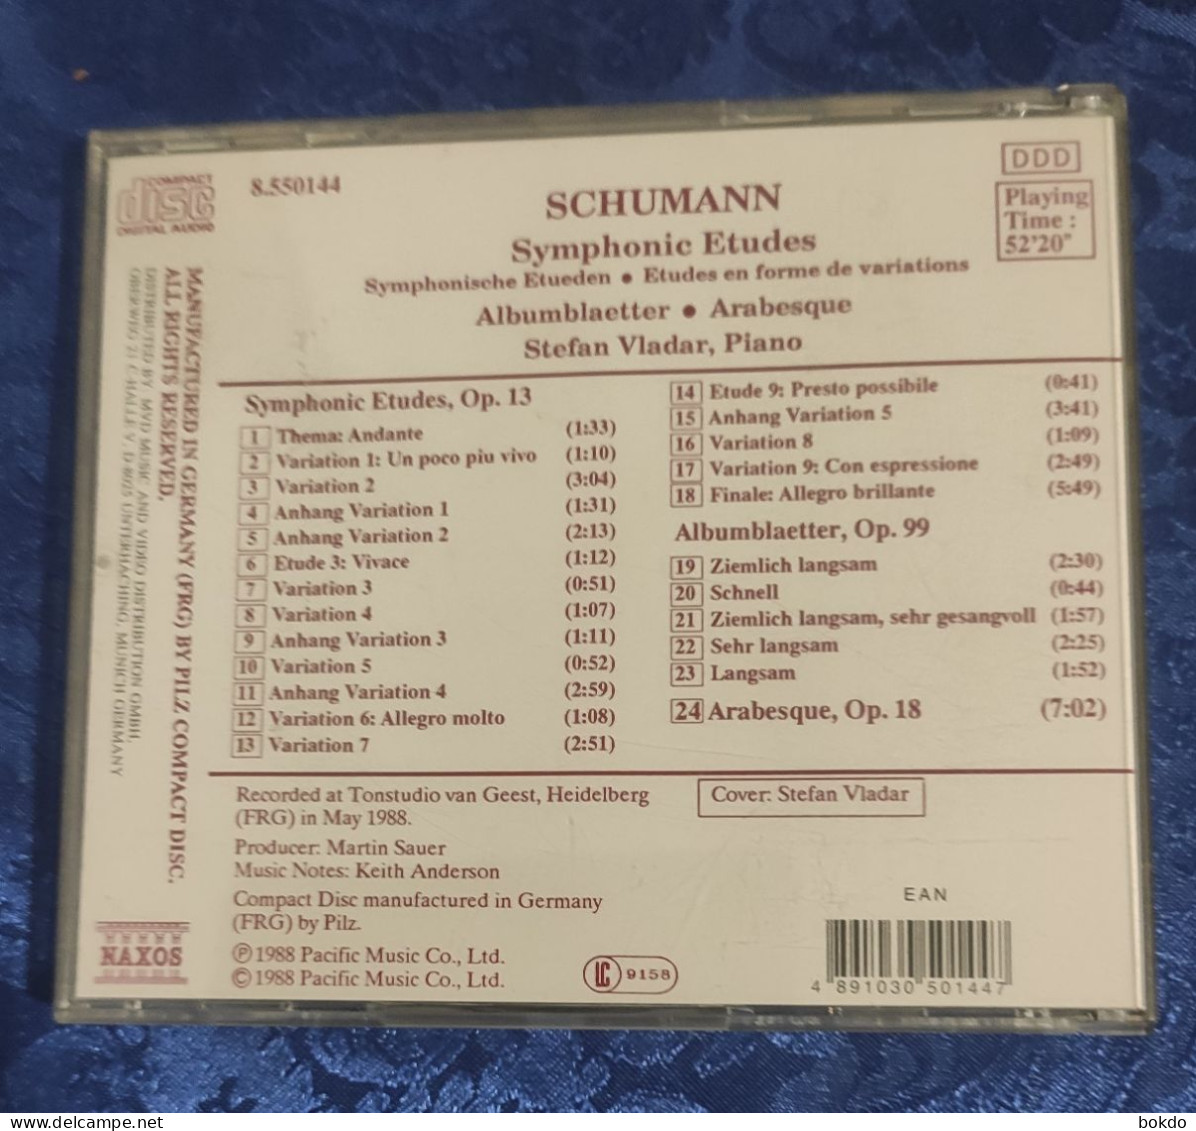 Schumann - Symphonie Etudes - Classical